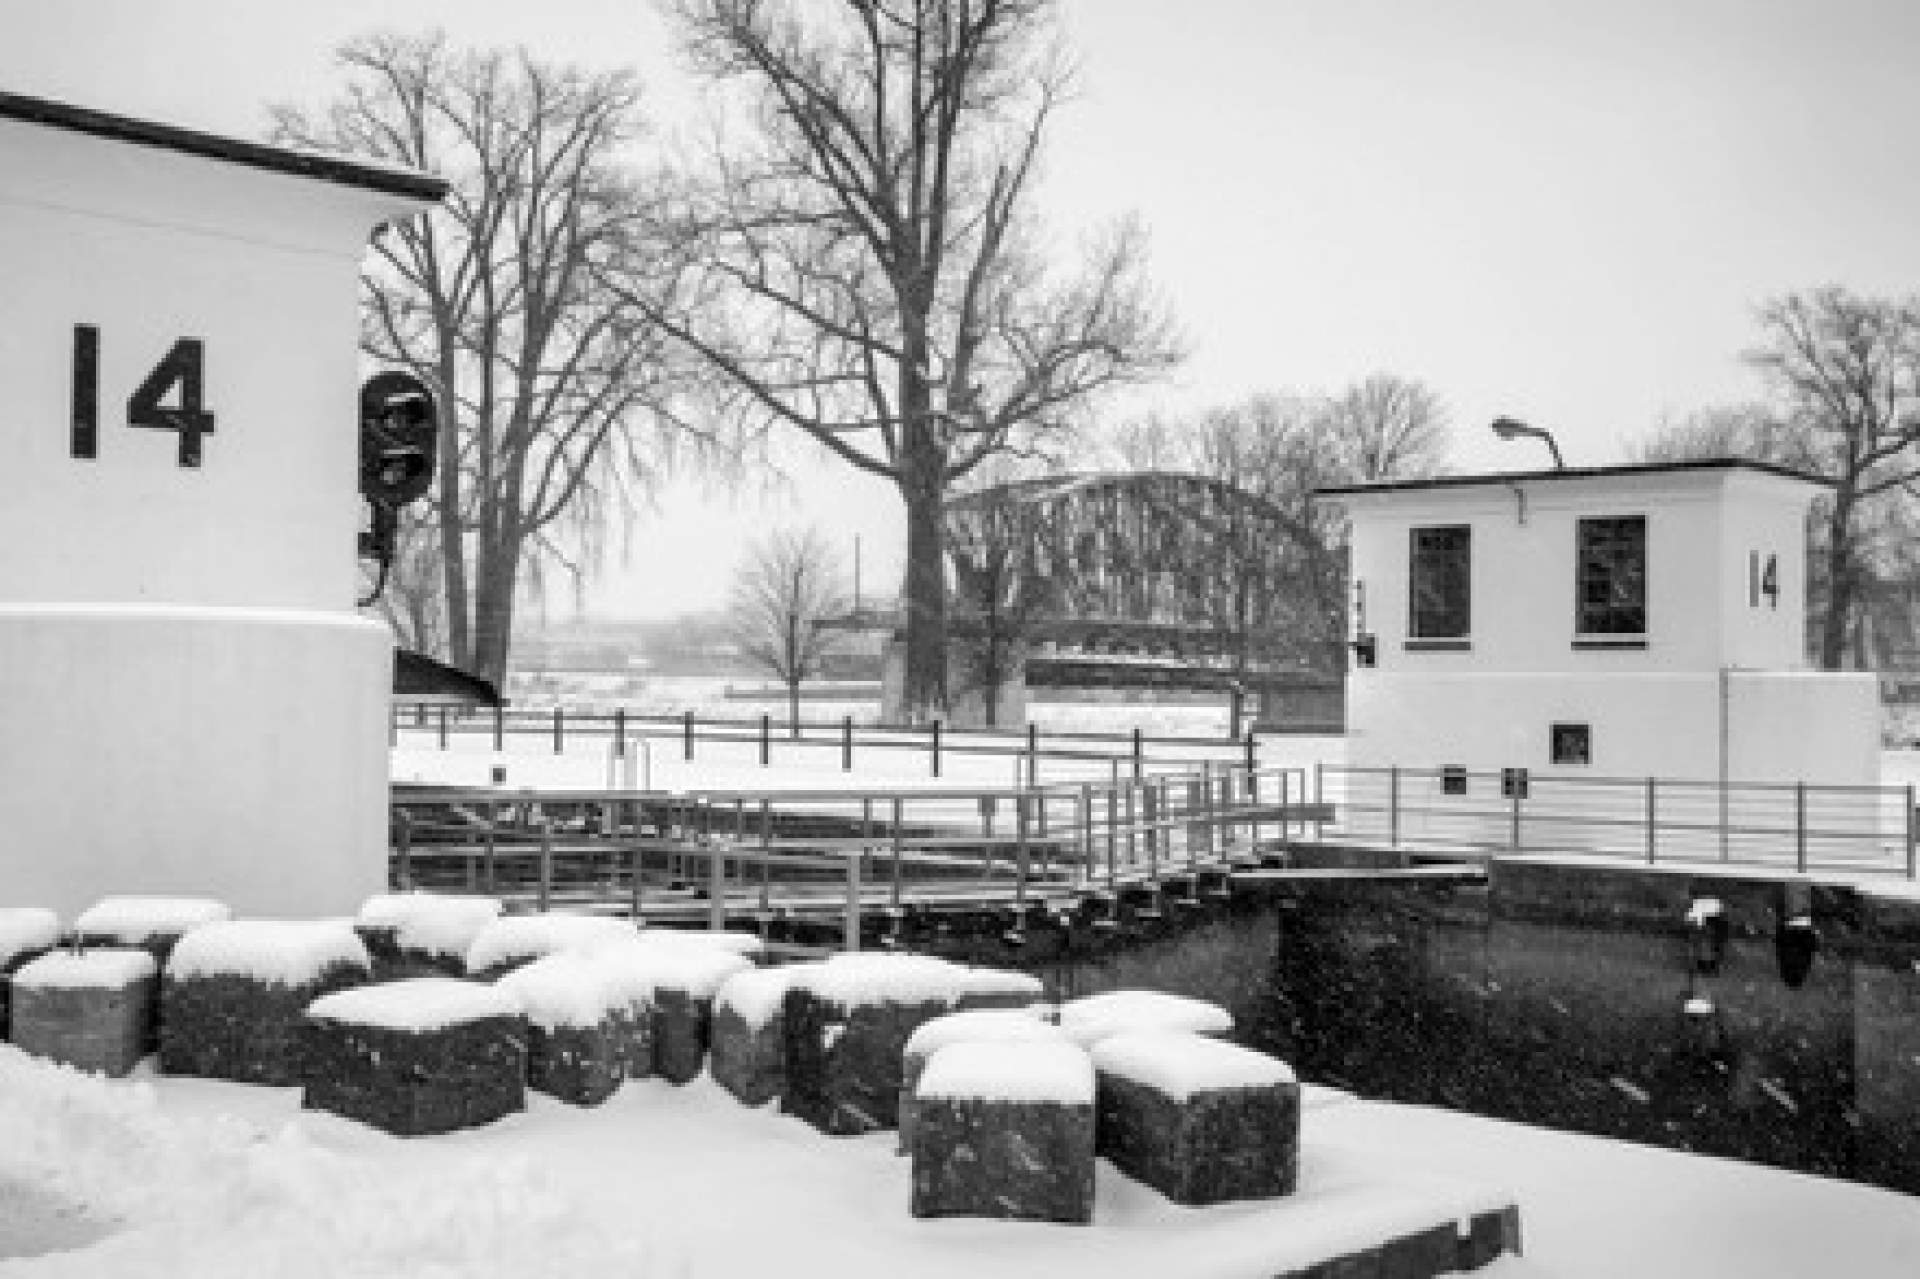 Winter at Lock E14, Palentine Bridge, NY